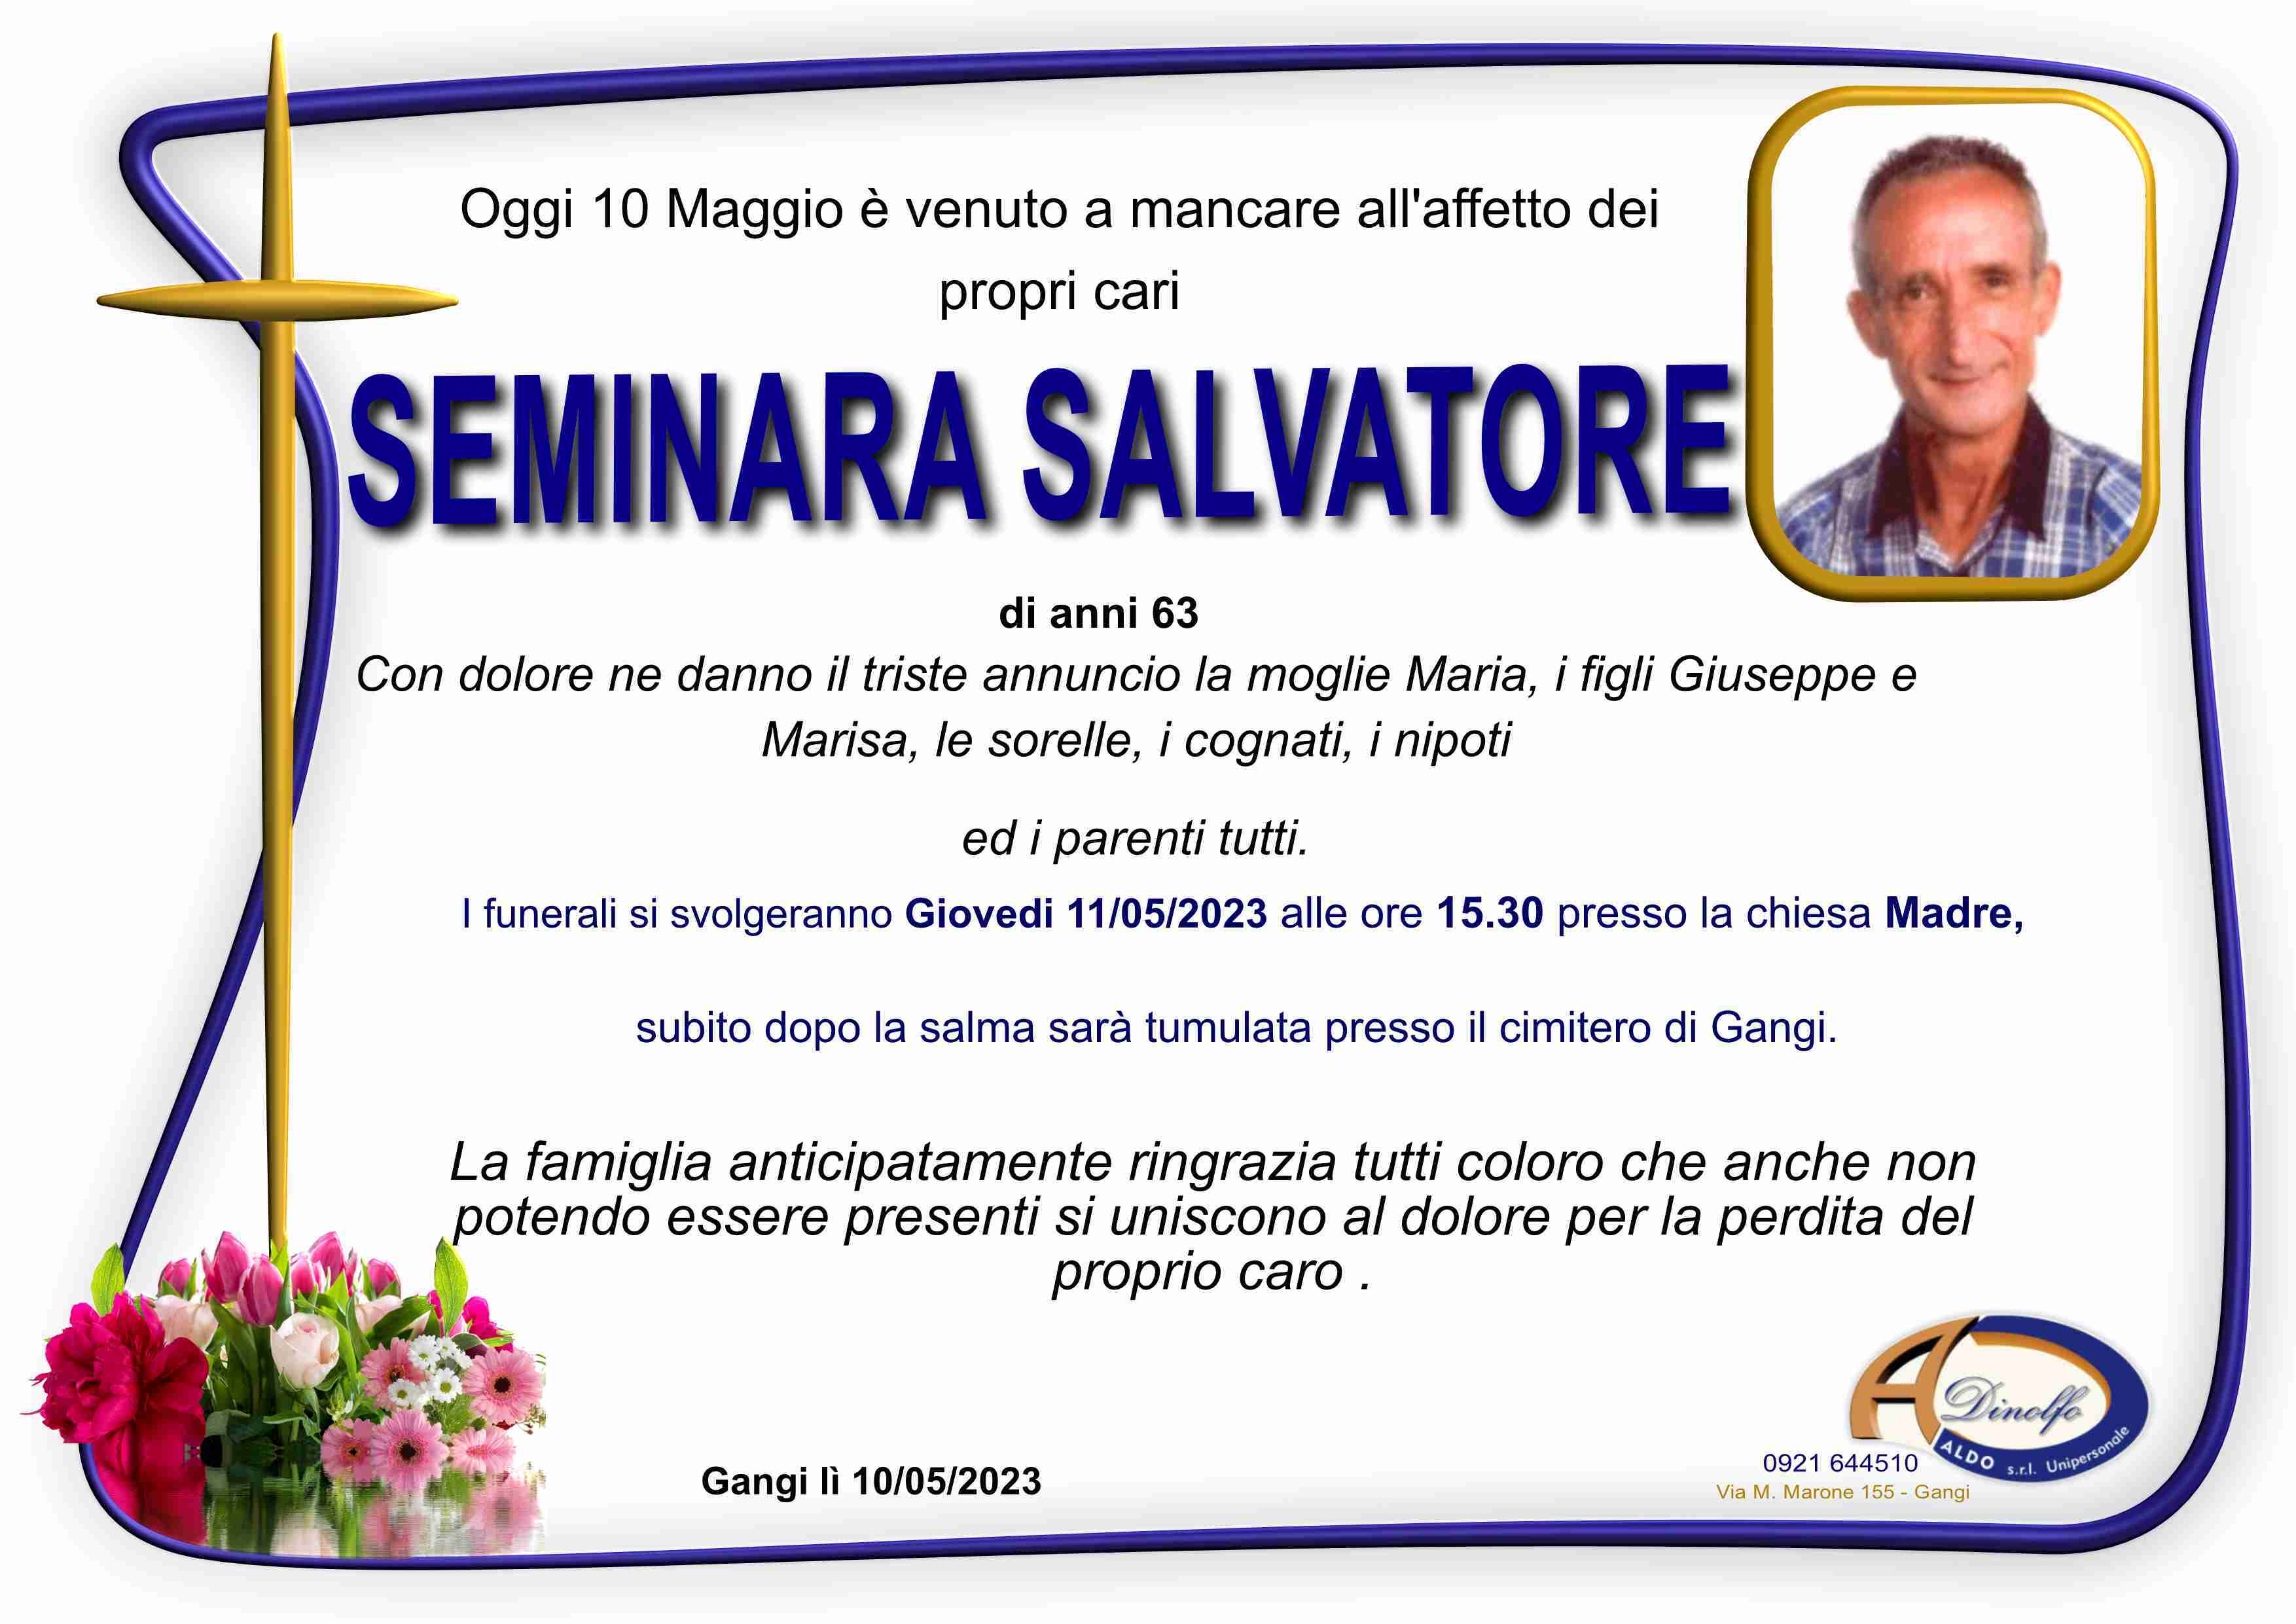 Salvatore Seminara